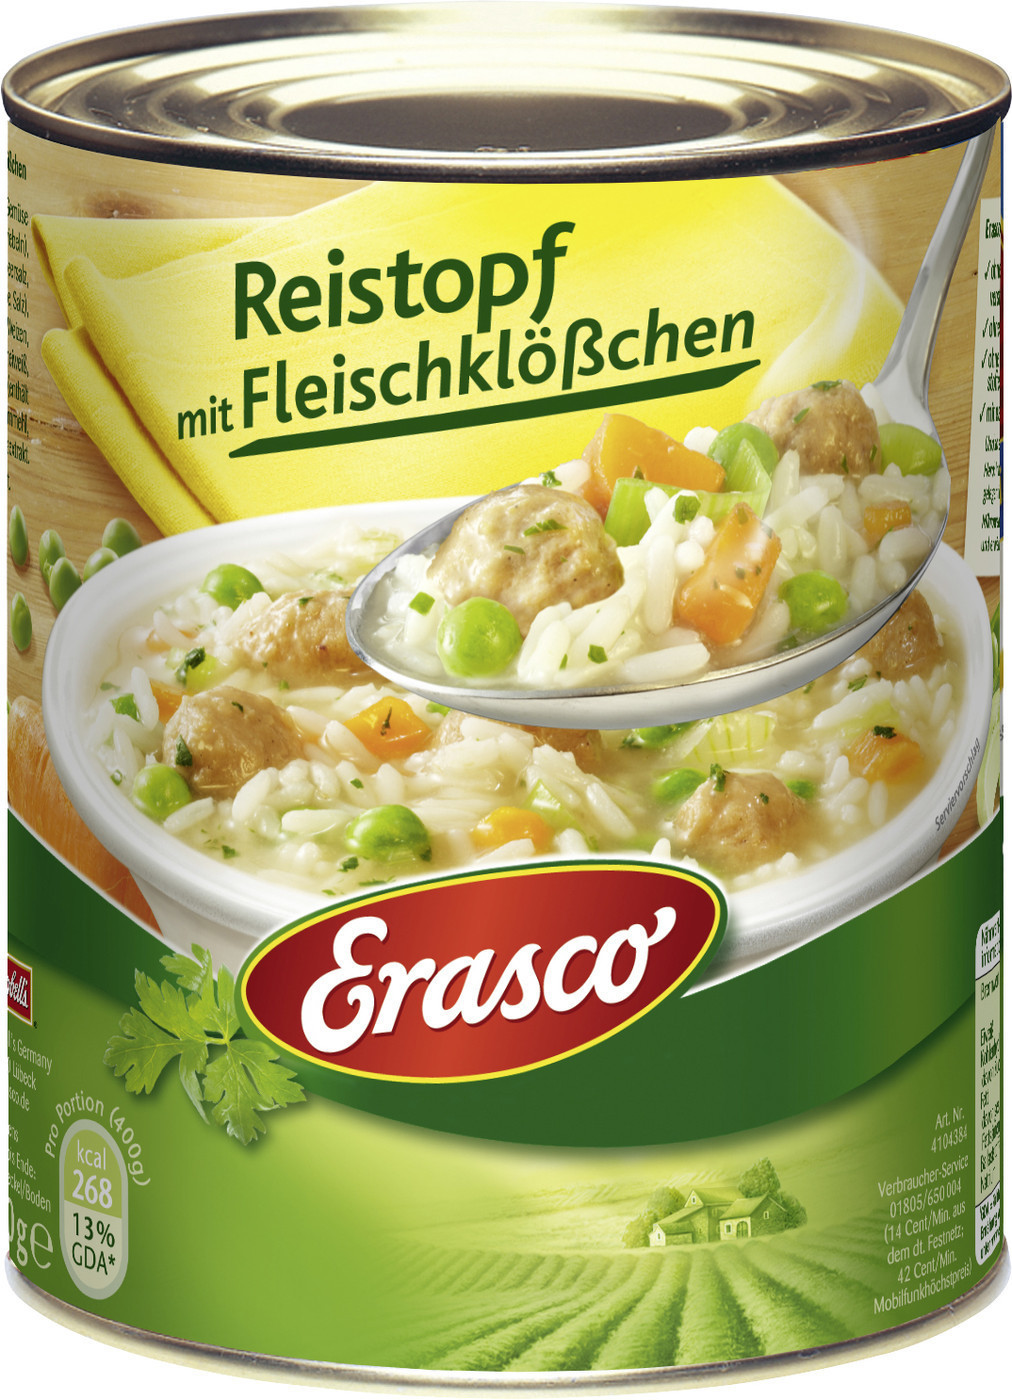 Erasco Reistopf mit Fleischklößchen (800 g) ab 3,29 € | Preisvergleich ...